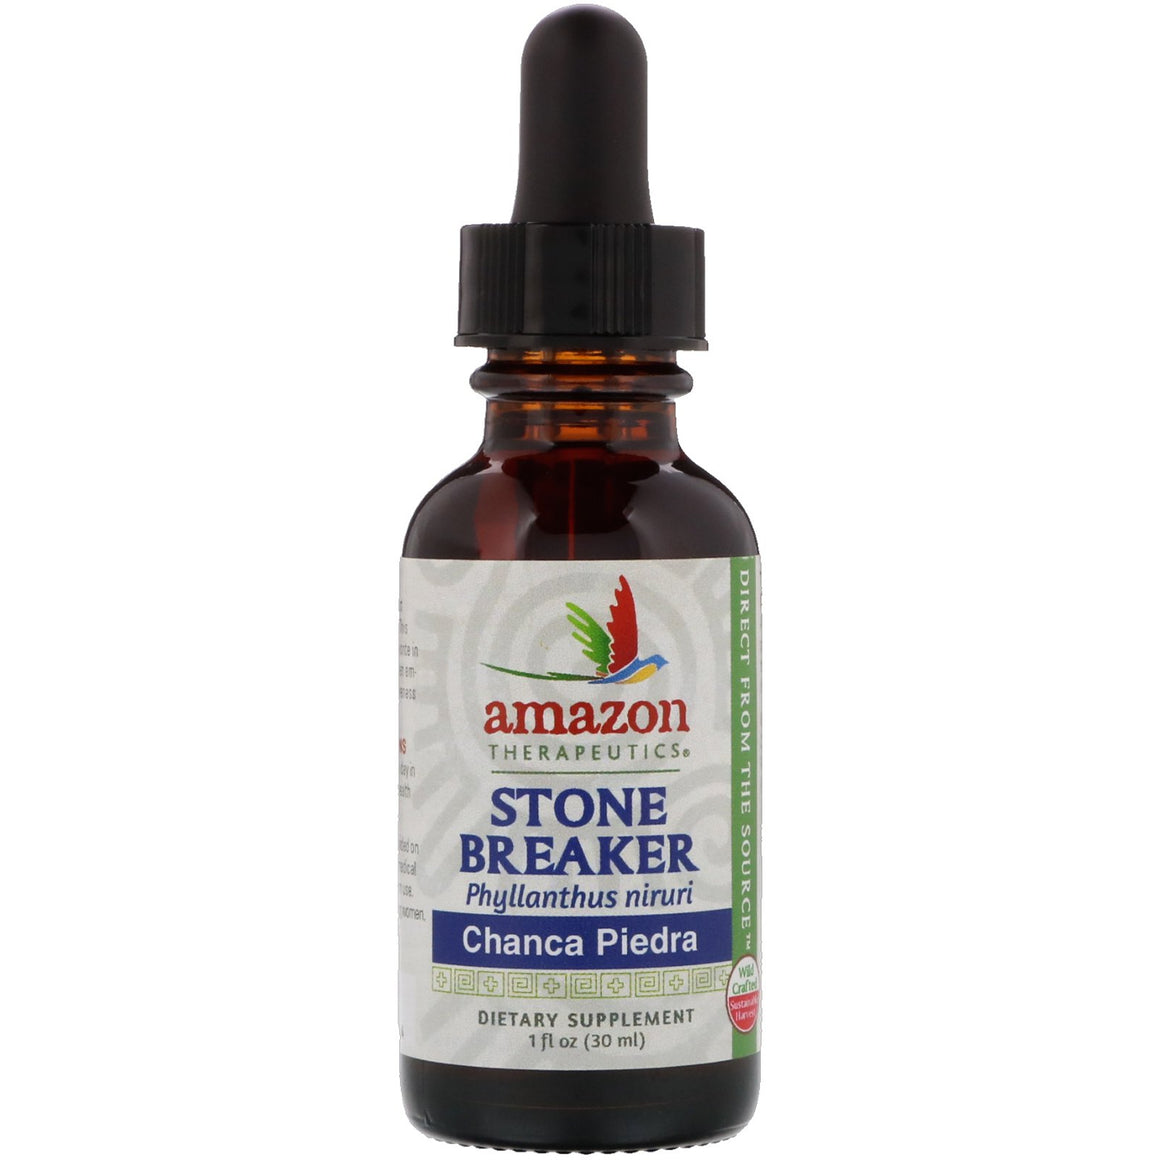 A bottle of Amazon Therapeutics Stone Breaker Chanca Piedra